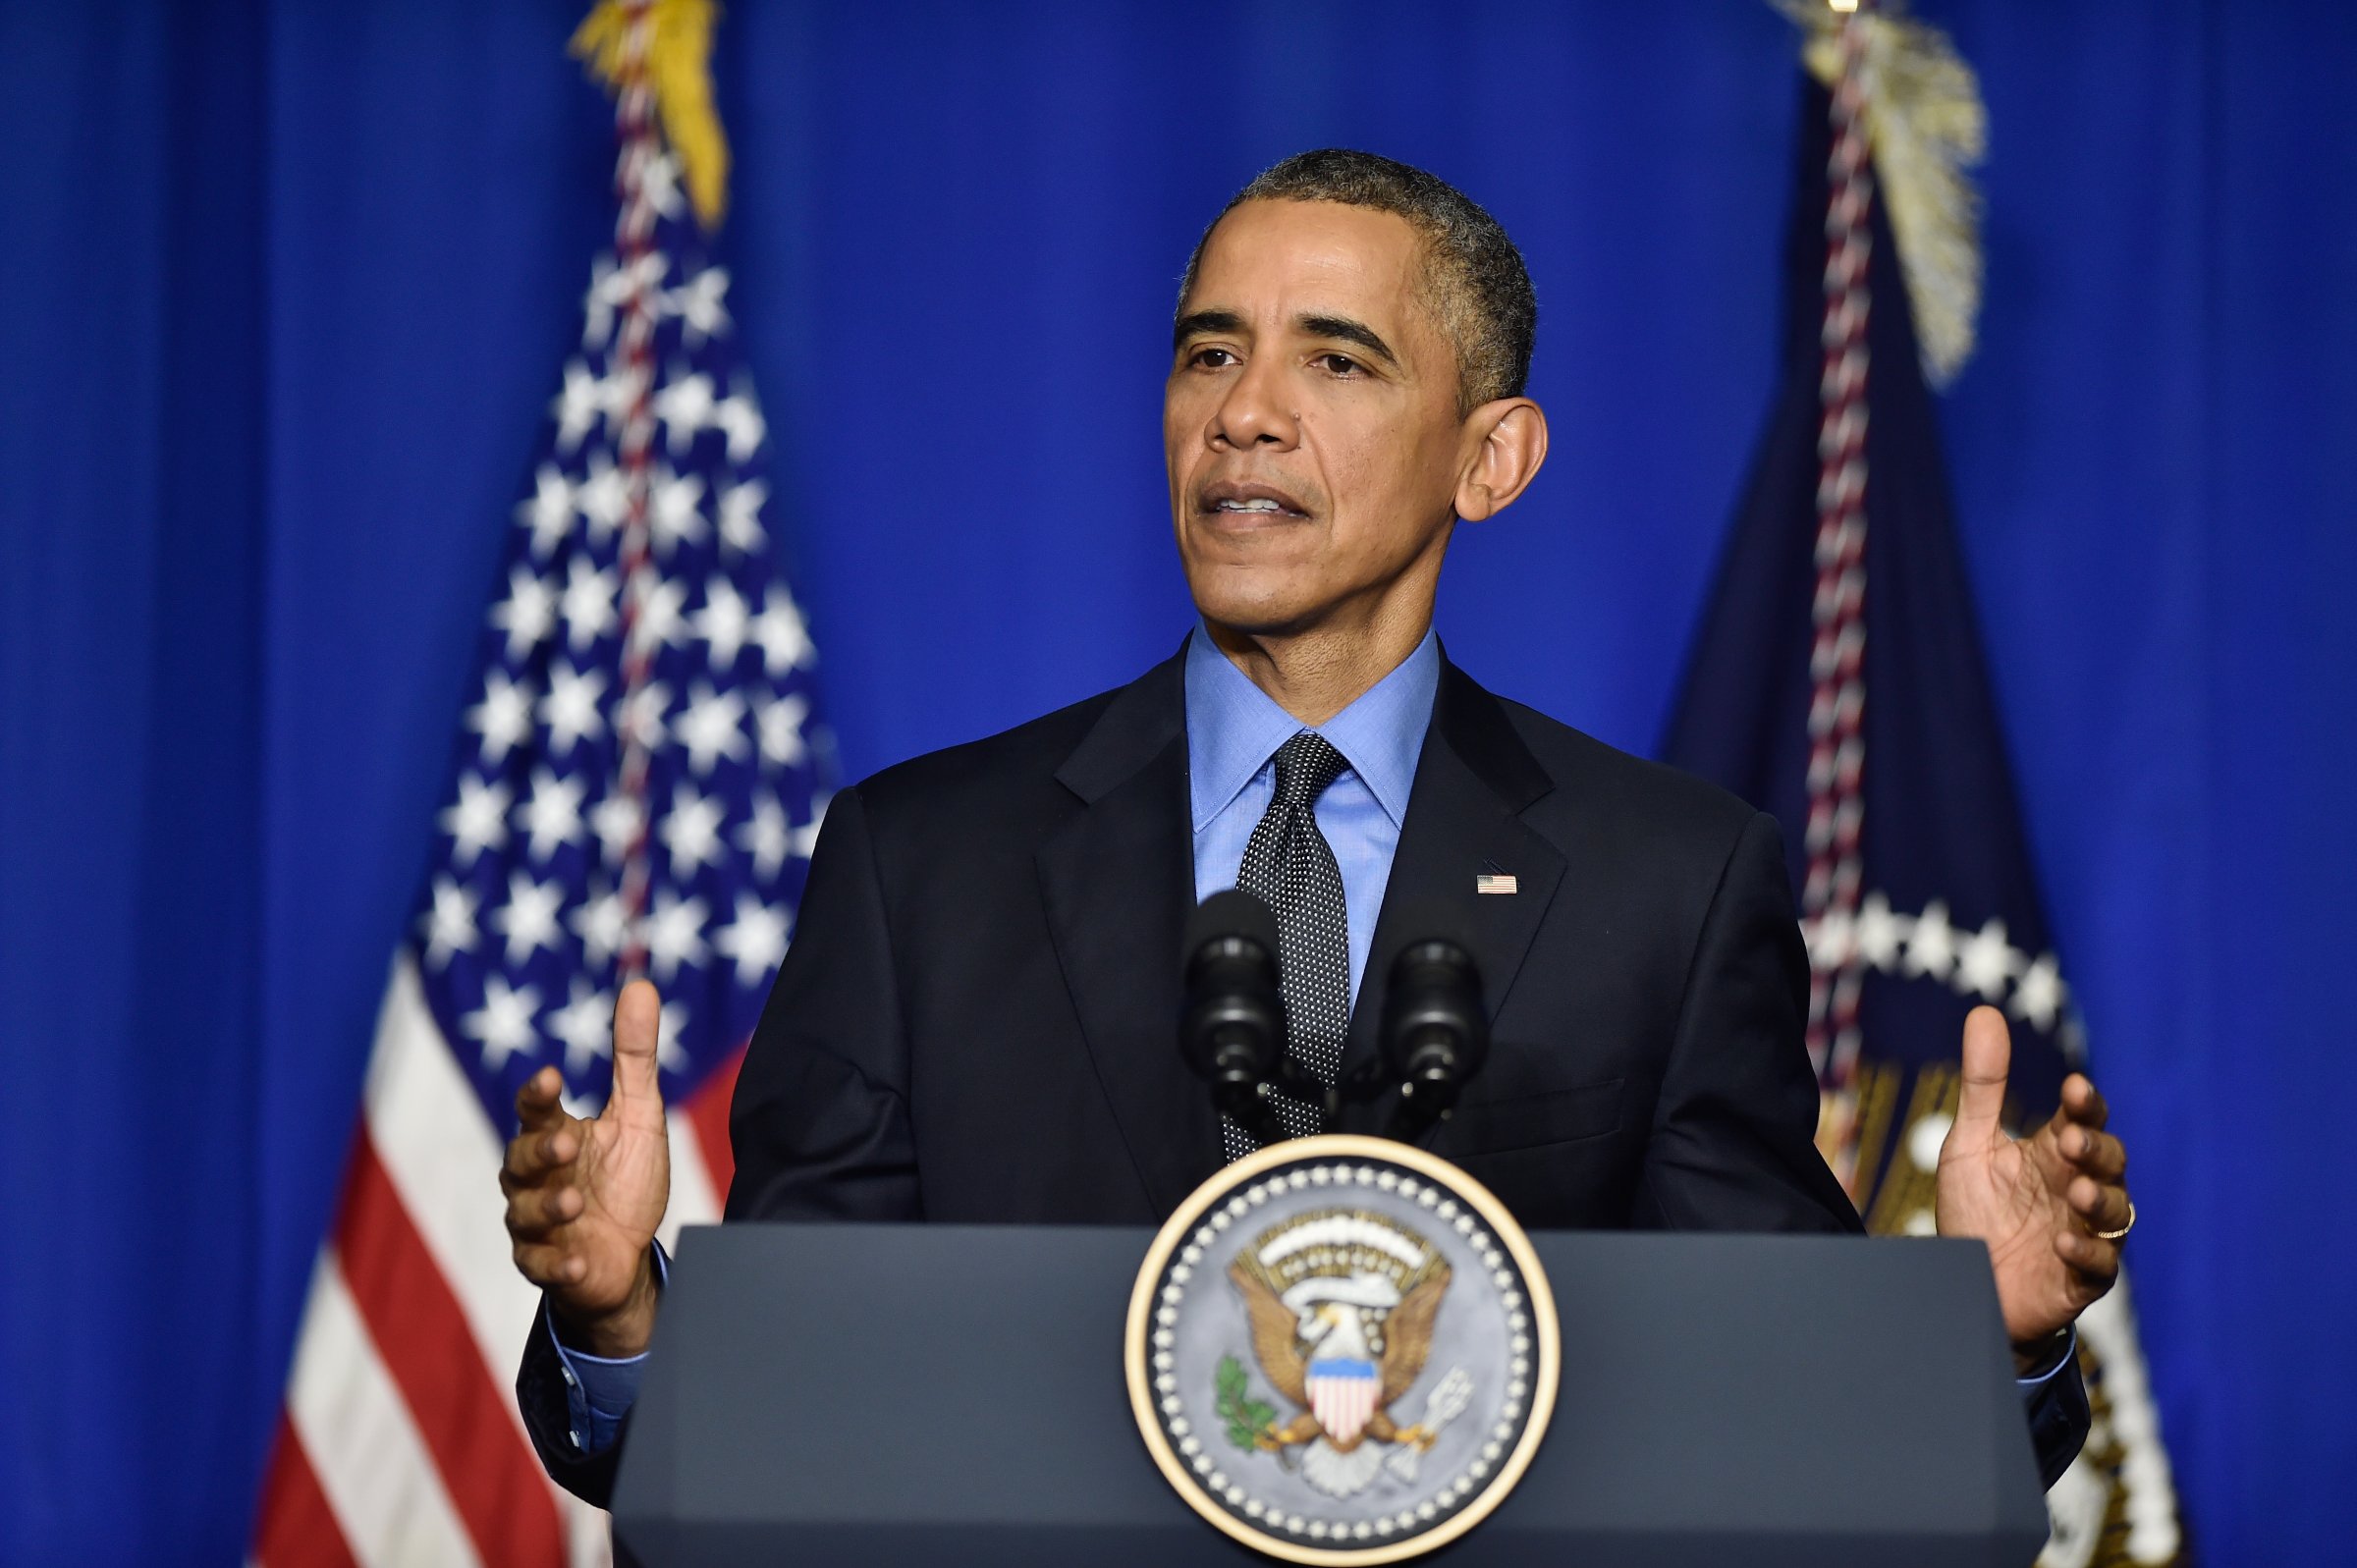 Barack Obama speaks on Dec. 1, 2015 in Paris, France.